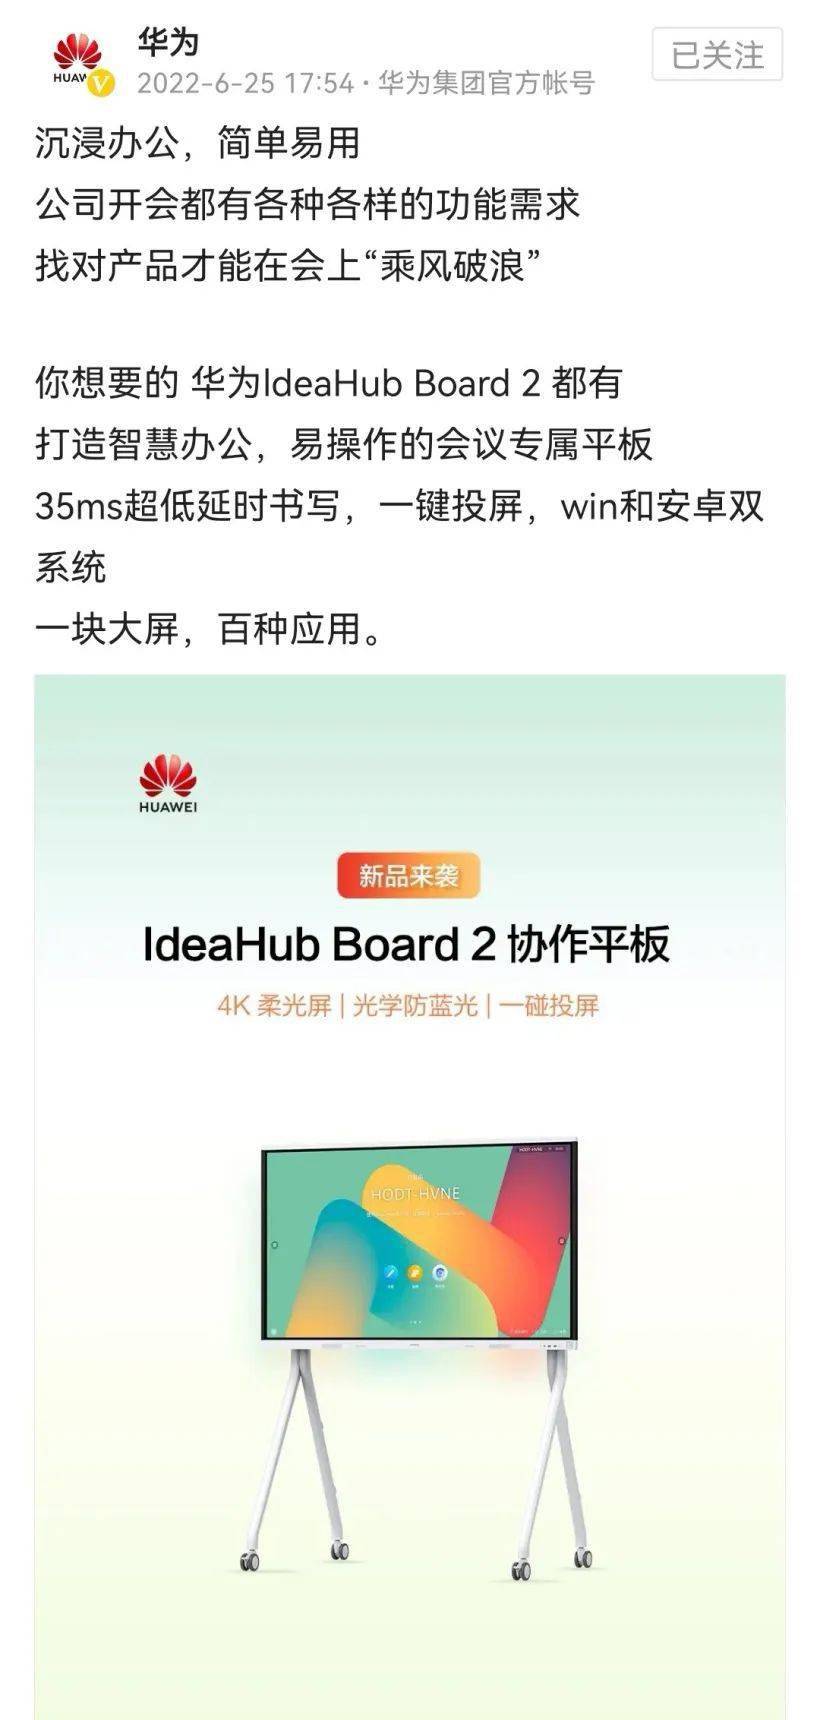 华为发布IdeaHub Board 2 65英寸协作平板，支持Windows和安卓双系统 众测价 10268 元 ！(1)